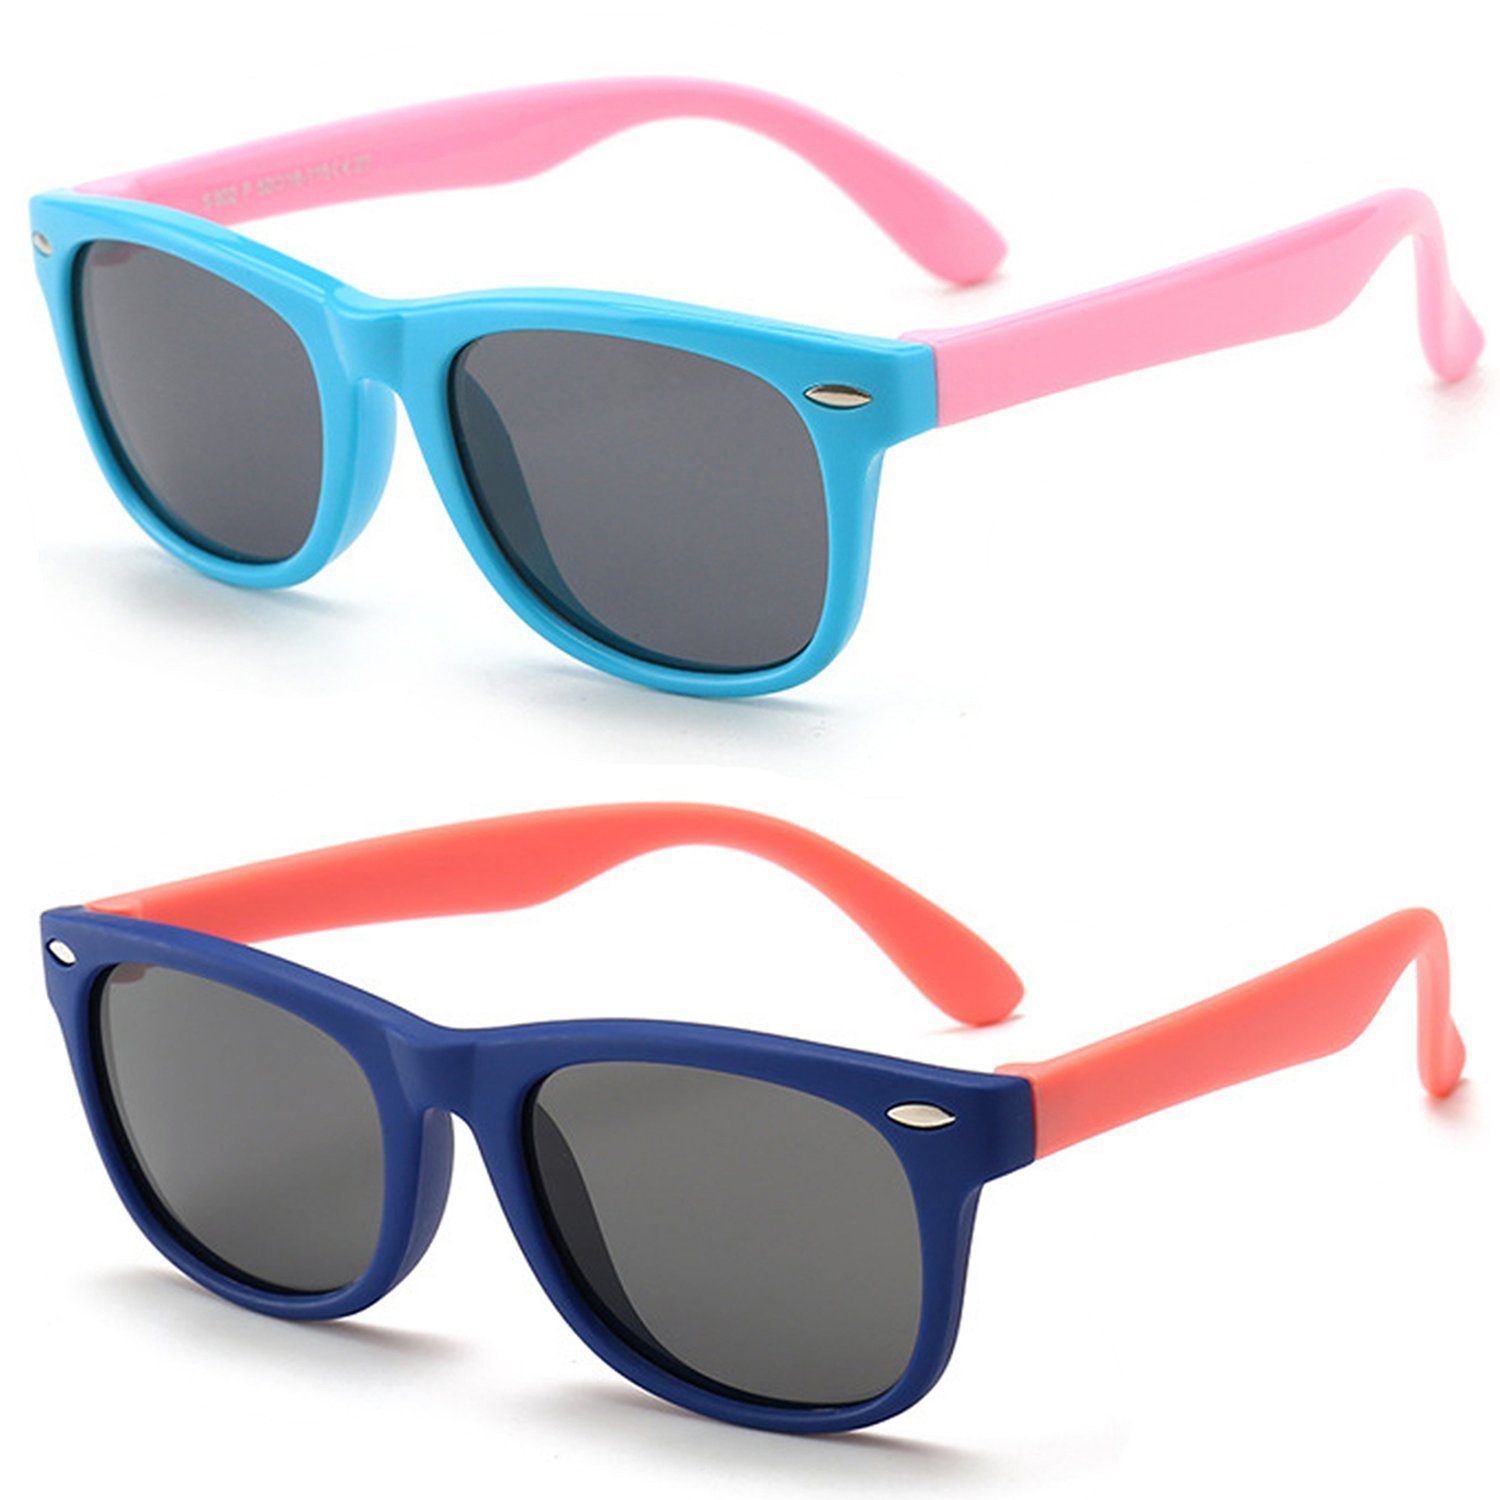 Olotos Sonnenbrille Sonnenbrille für Kinder Mädchen Jungen Gummi 100% UV400 Schutz Brille Hellblau+Dunkelblau